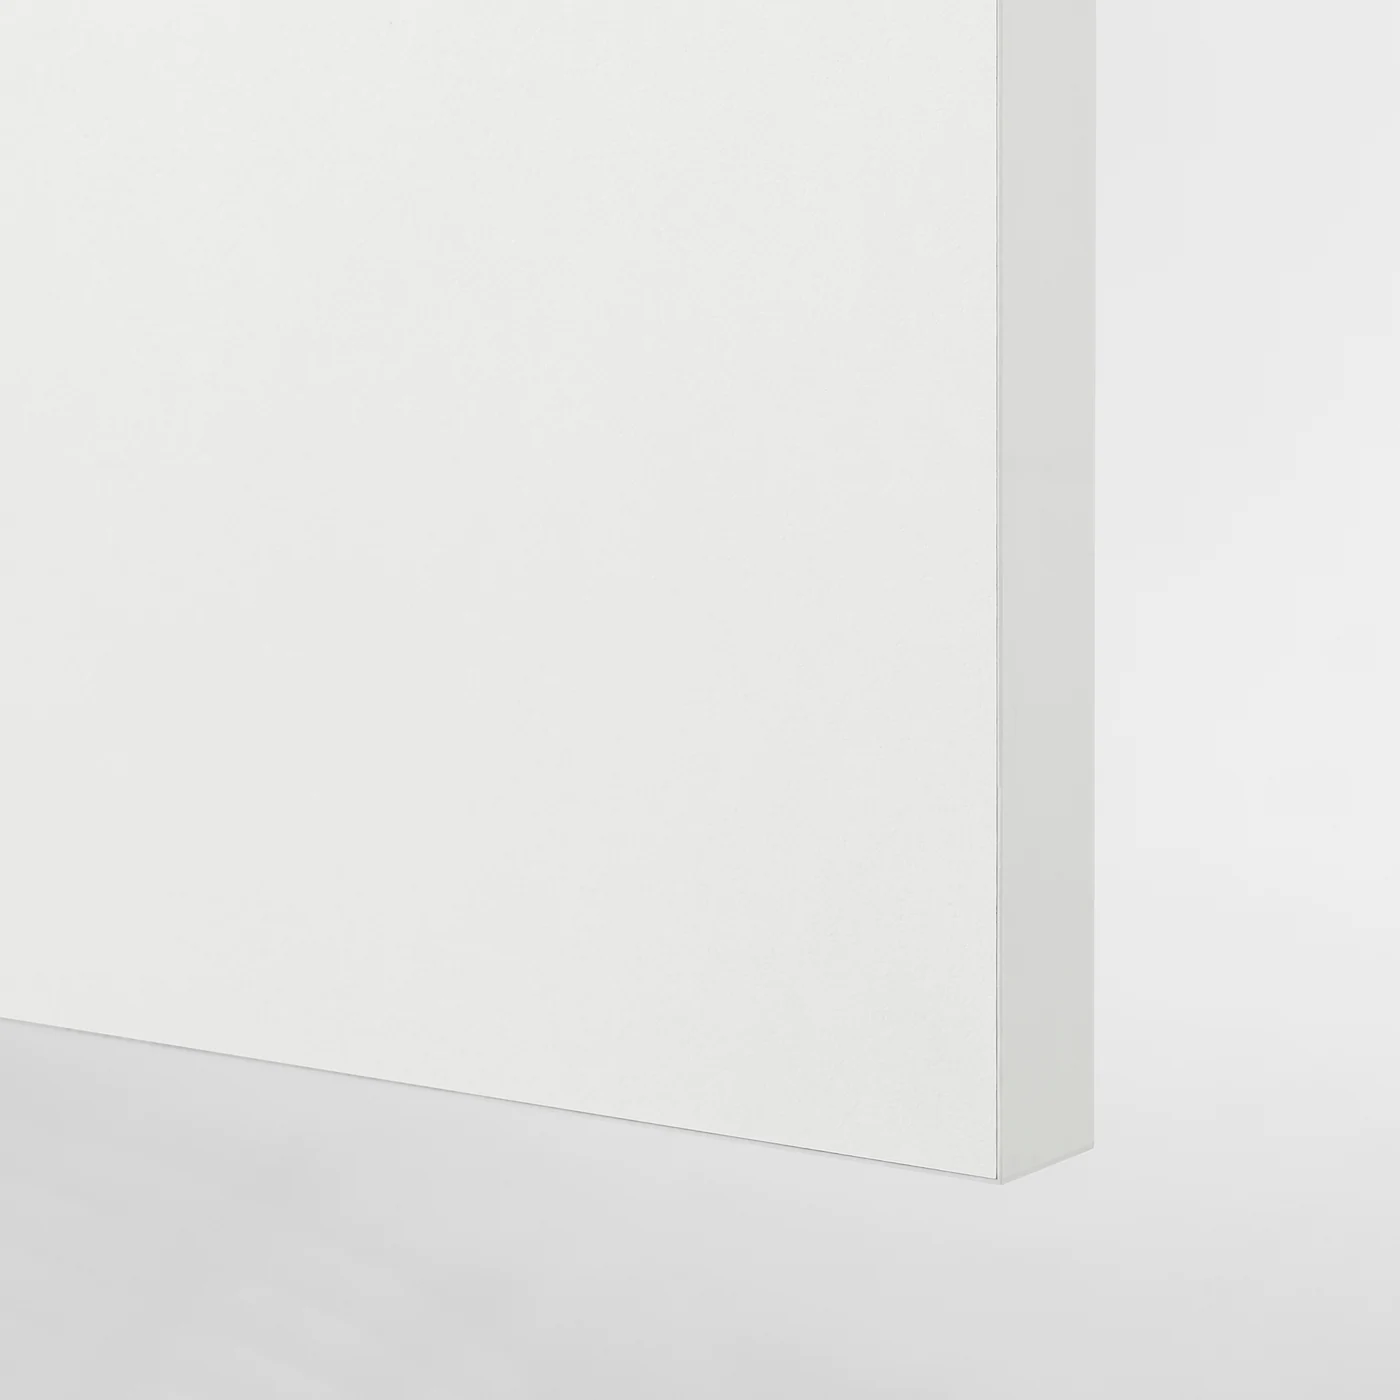 knoxhult-armario-pared-con-puerta-blanco_0871537_pe615186_s5.jpg